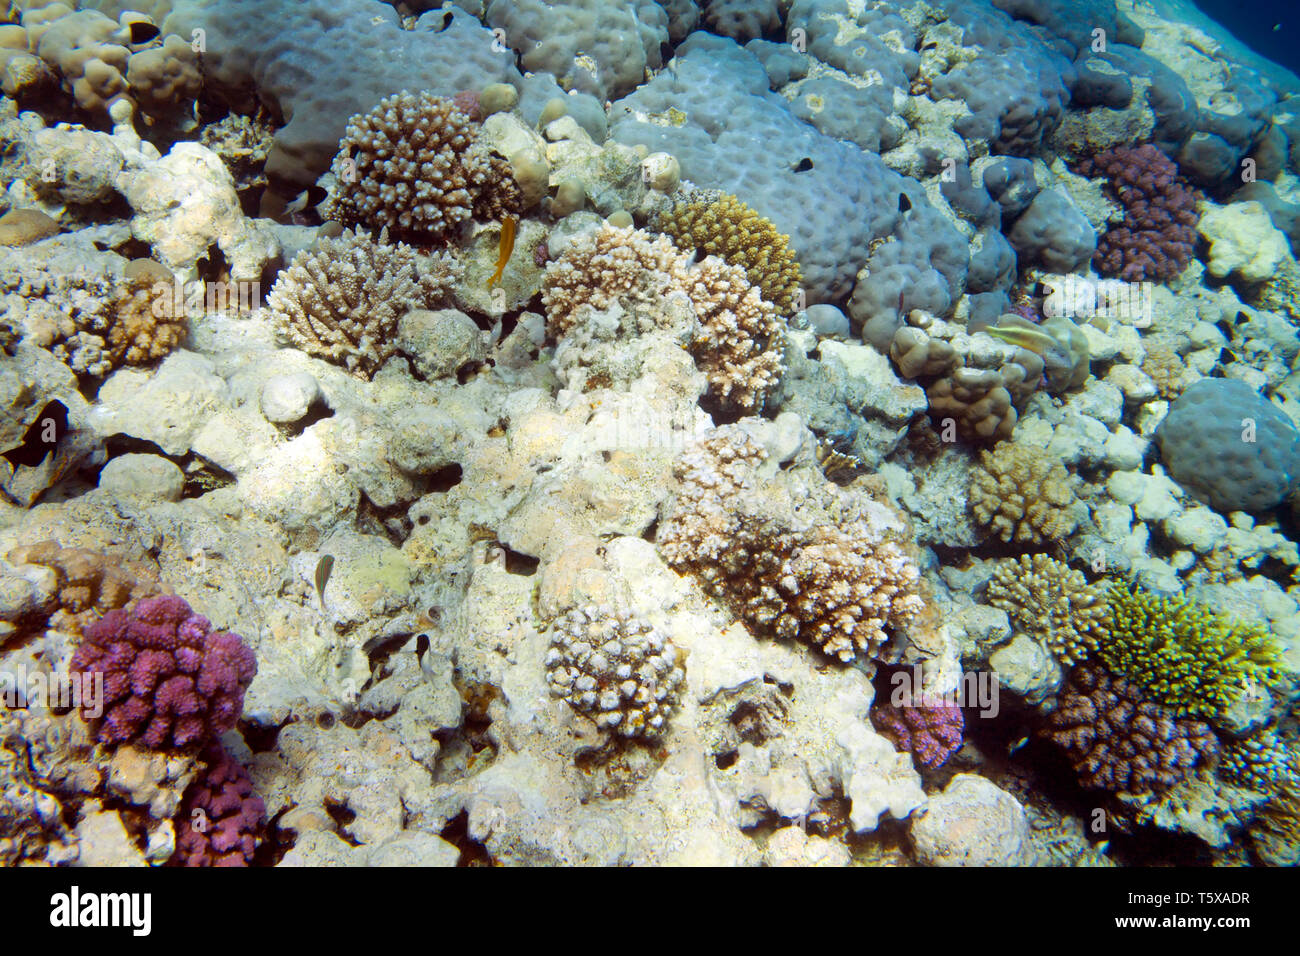 La vita subacquea del Mar Rosso in Egitto. I pesci di acqua salata e la barriera corallina. Corallo colorato parete Foto Stock